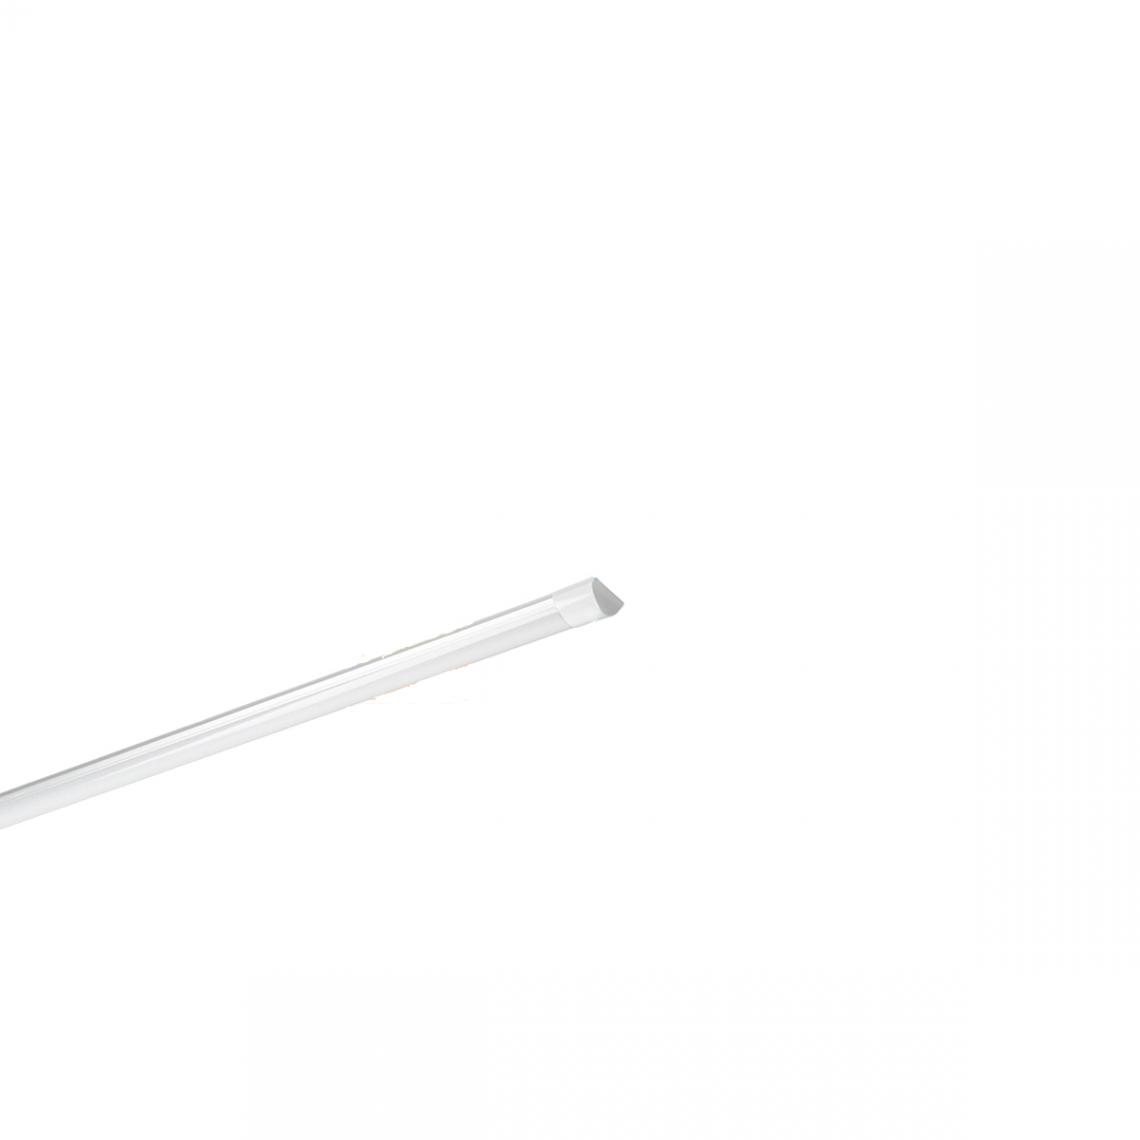 Ecd Germany - Set 15x Lampe tube linéaire plafond 45W 150cm blanc froid batten light bureau néon led - Tubes et néons